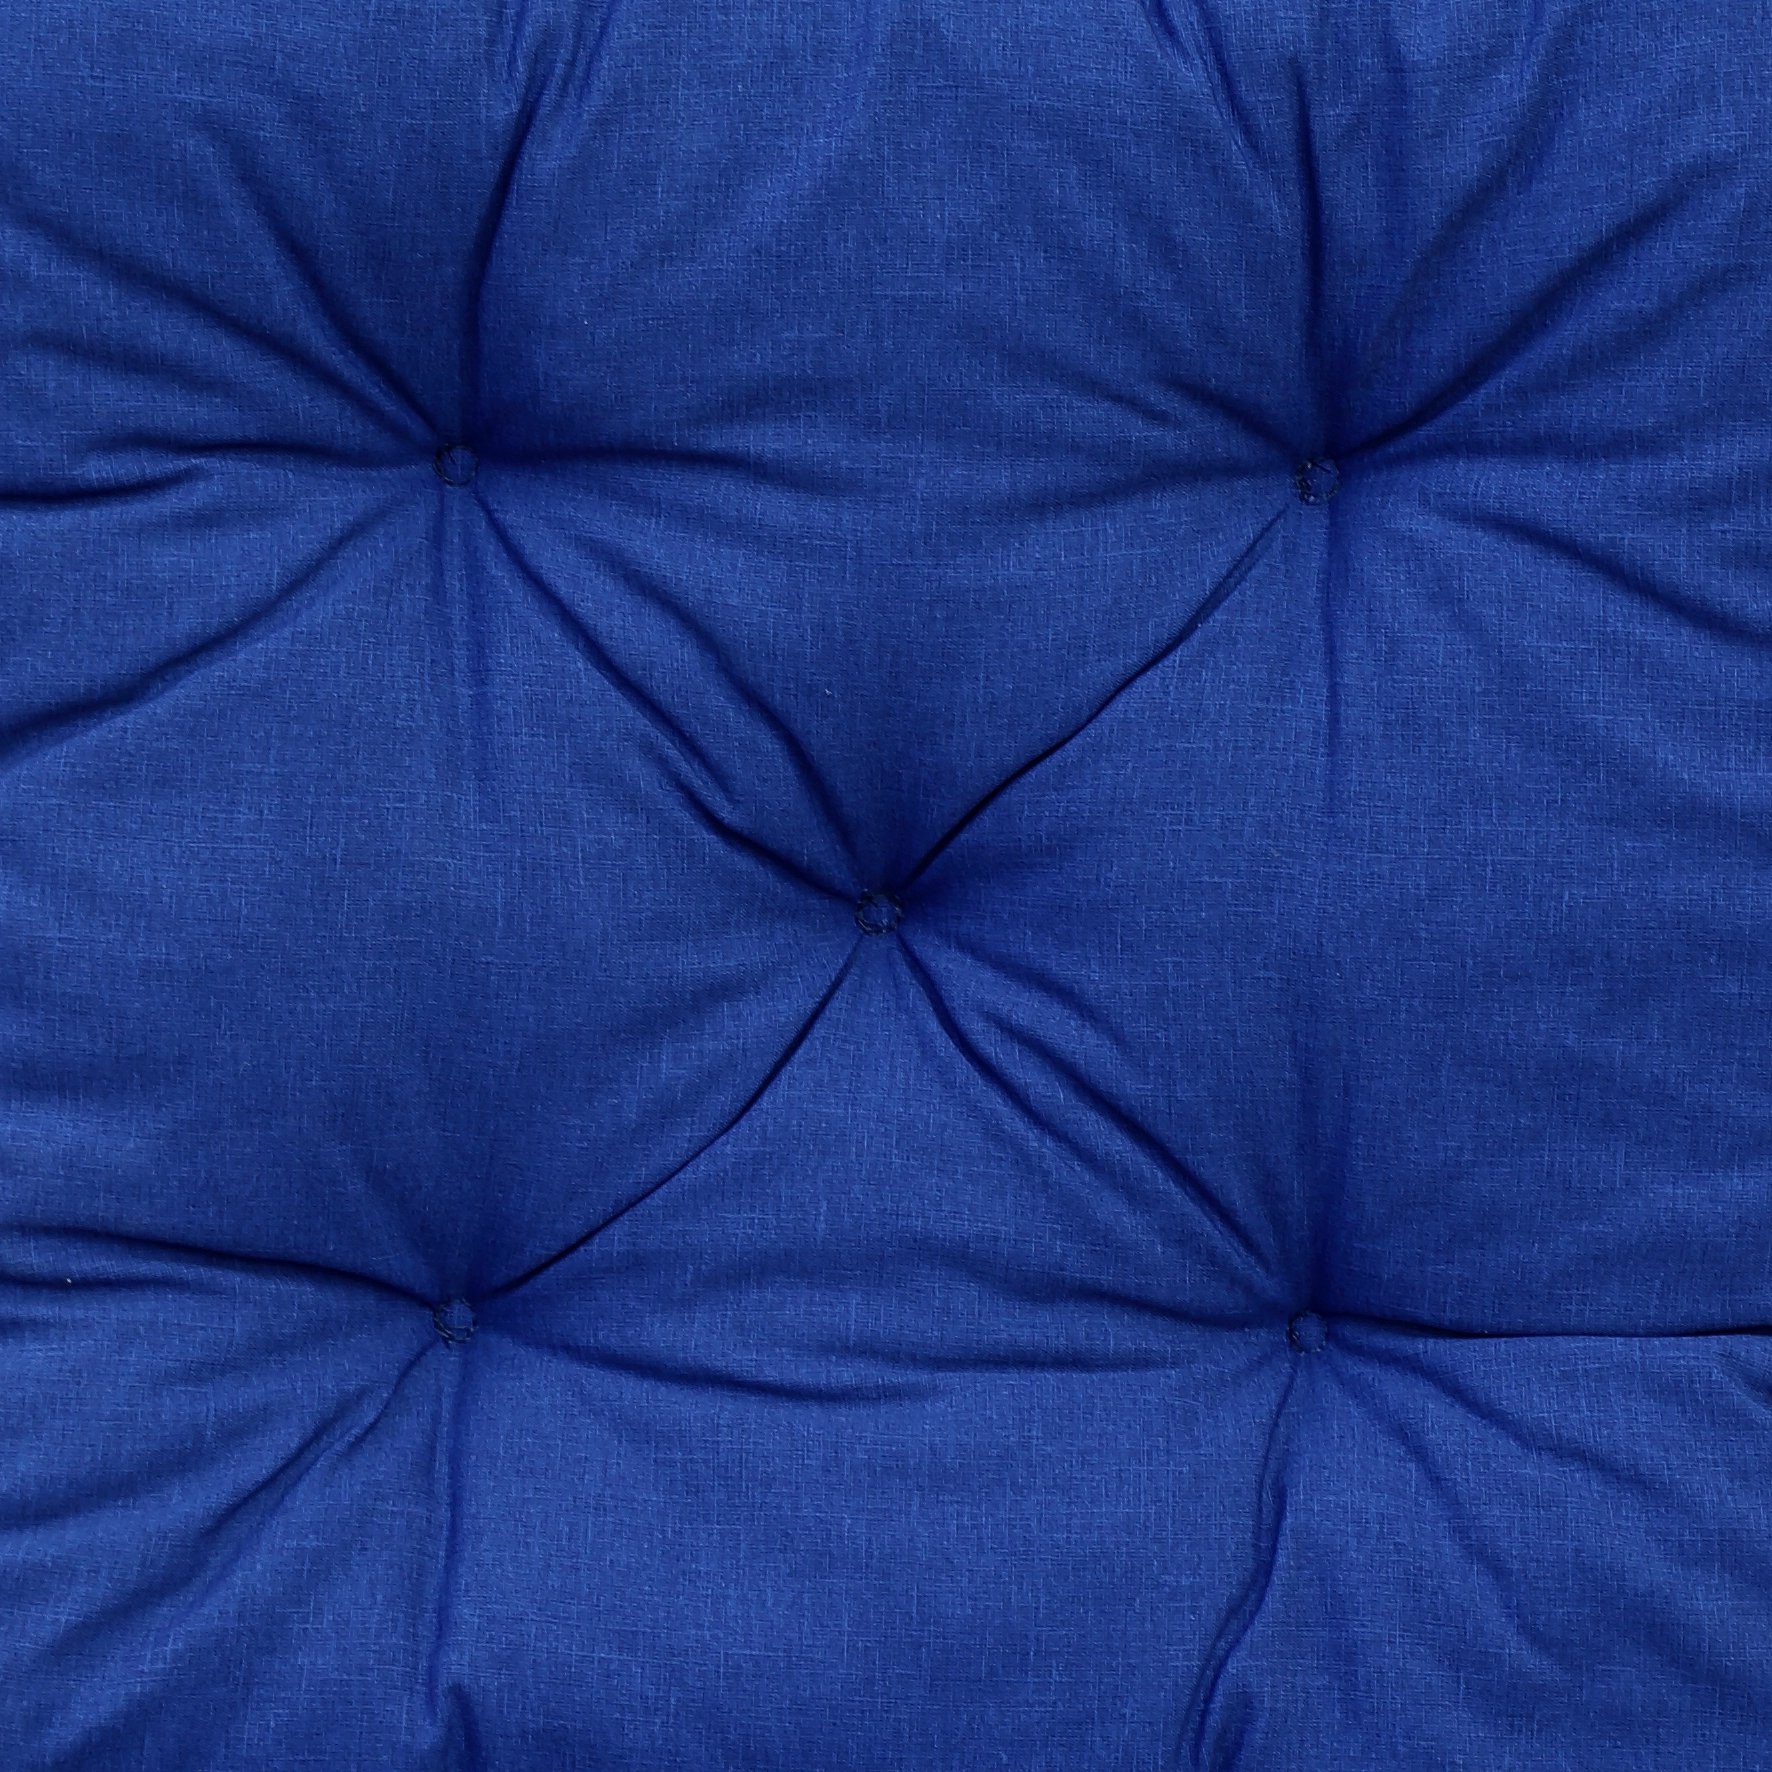 Feeling blau Palettenkissen 120x80cm//120x60cm, Stoff! inkl. Rückenteil, Home UV-beständiger Palettenkissen